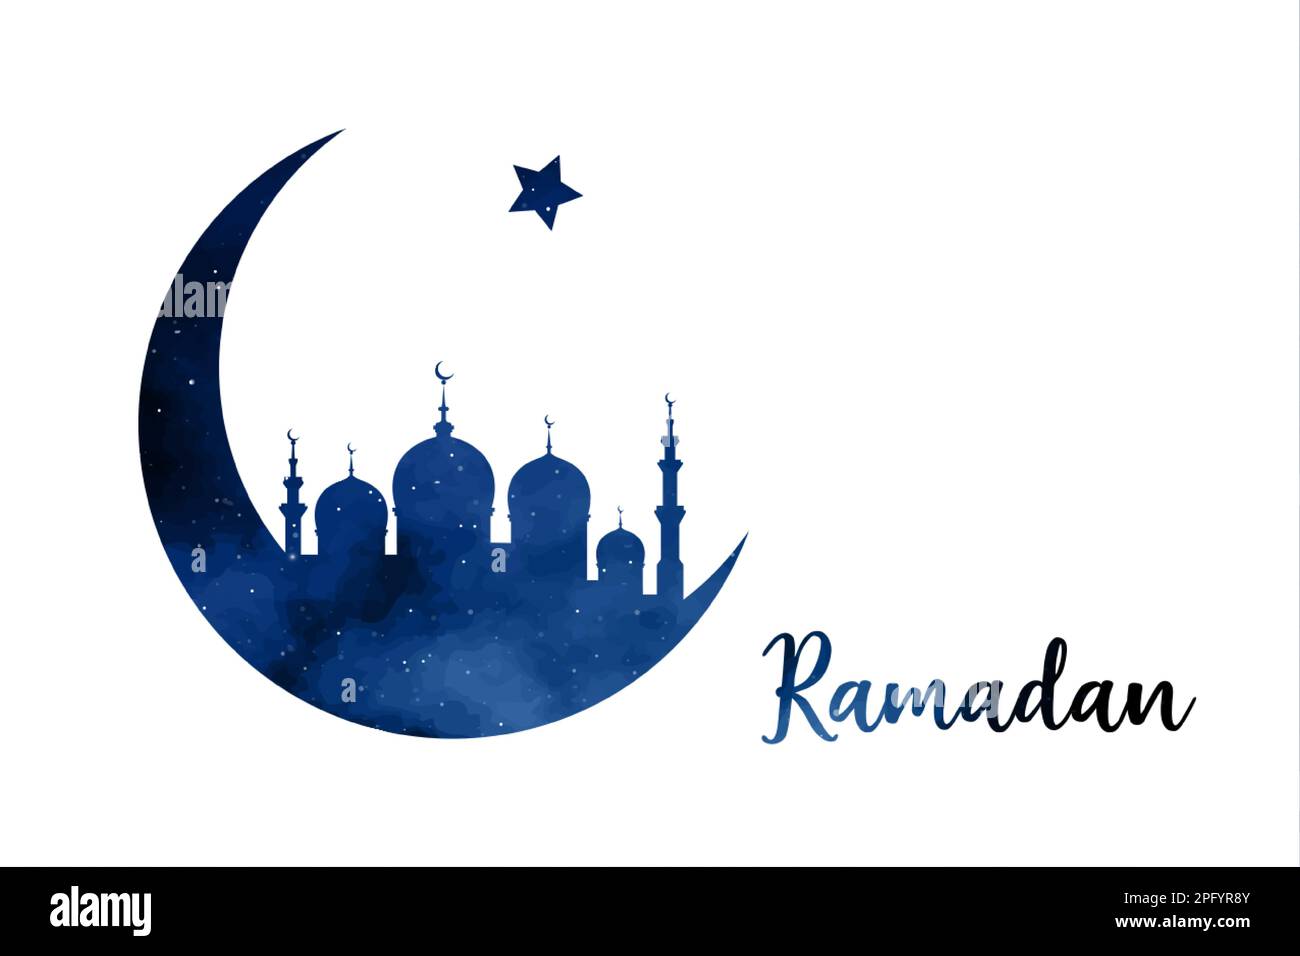 Ramadan-Konzept in Halbmondform mit arabisch-islamischer Moschee zur Feier des Heiligen Monats der muslimischen Gemeinschaft, vektorblaue Silhouette Stock Vektor